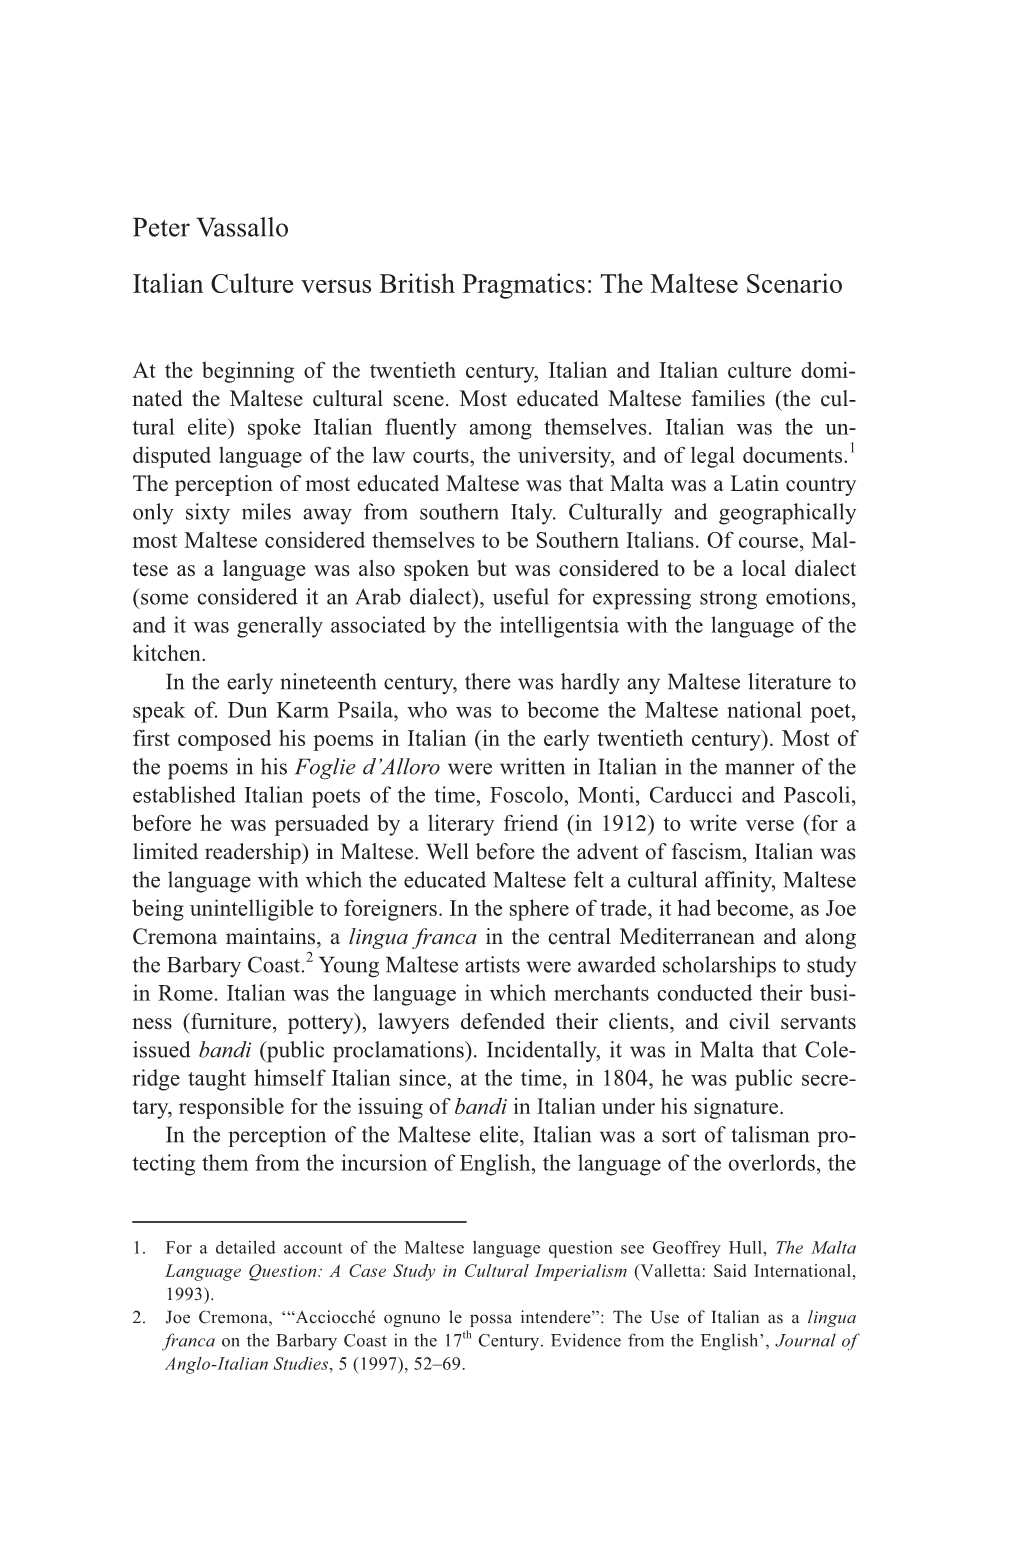 Peter Vassallo Italian Culture Versus British Pragmatics: the Maltese Scenario